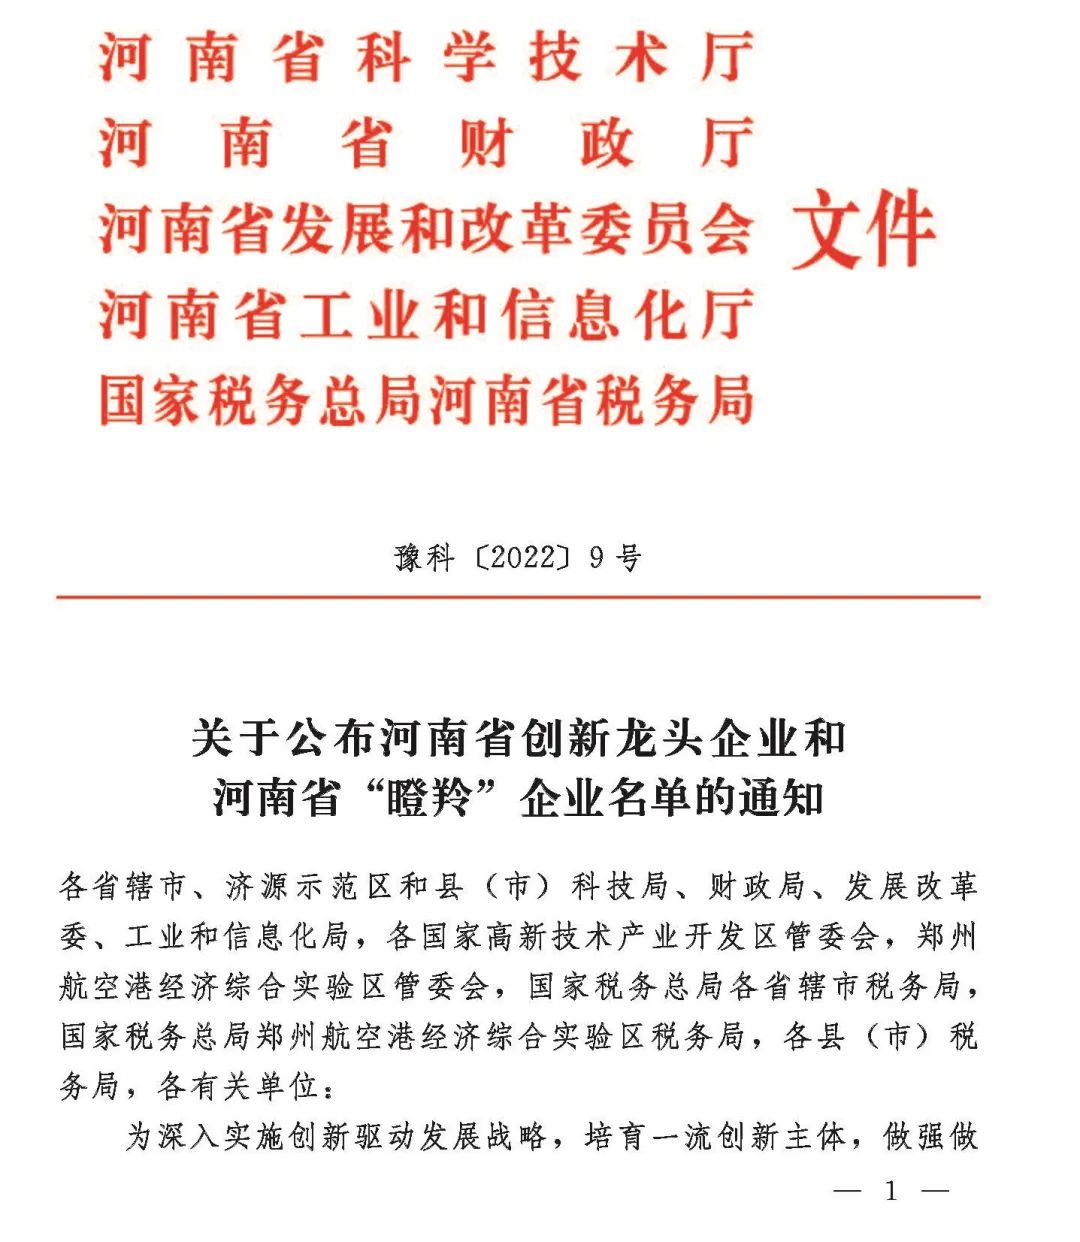 中鋁鄭州研究院榮獲2021年河南省創新龍頭企業